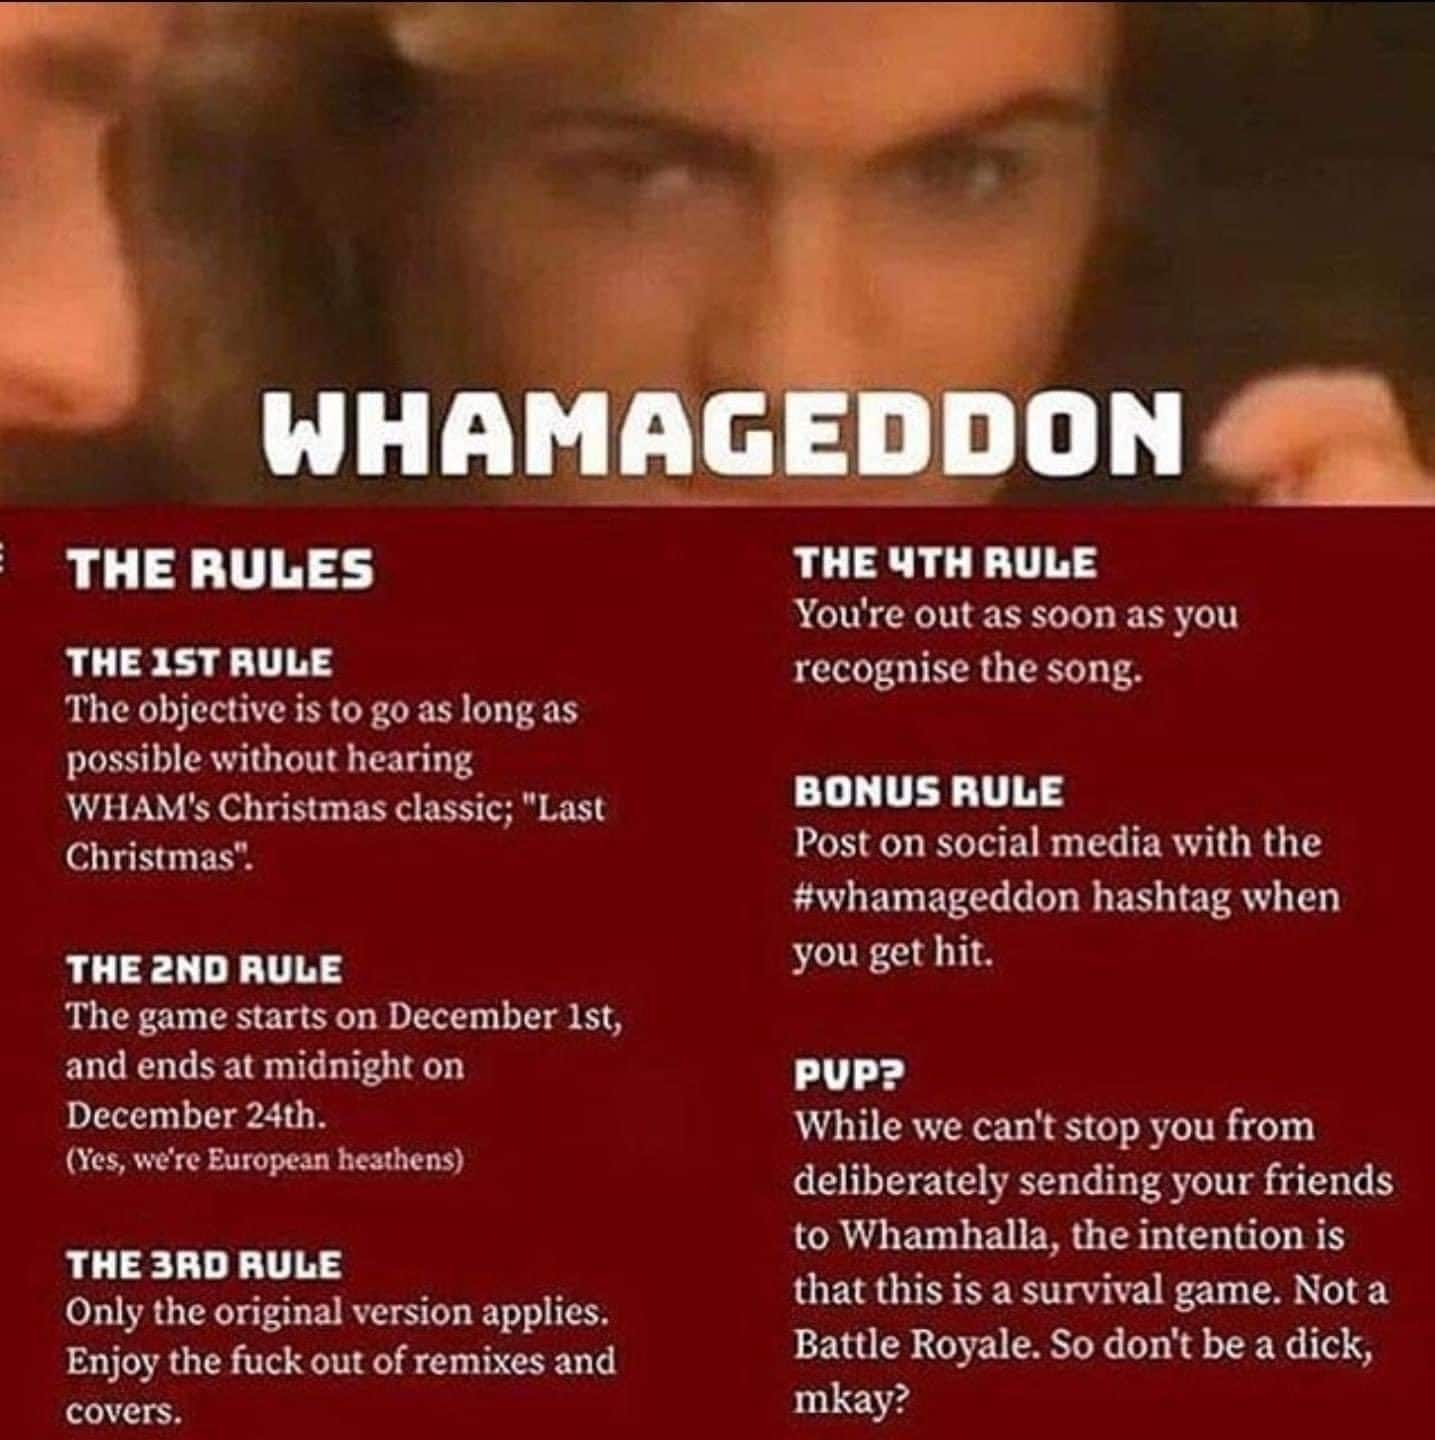 Le regole ufficiali del 'Whamaggedon'